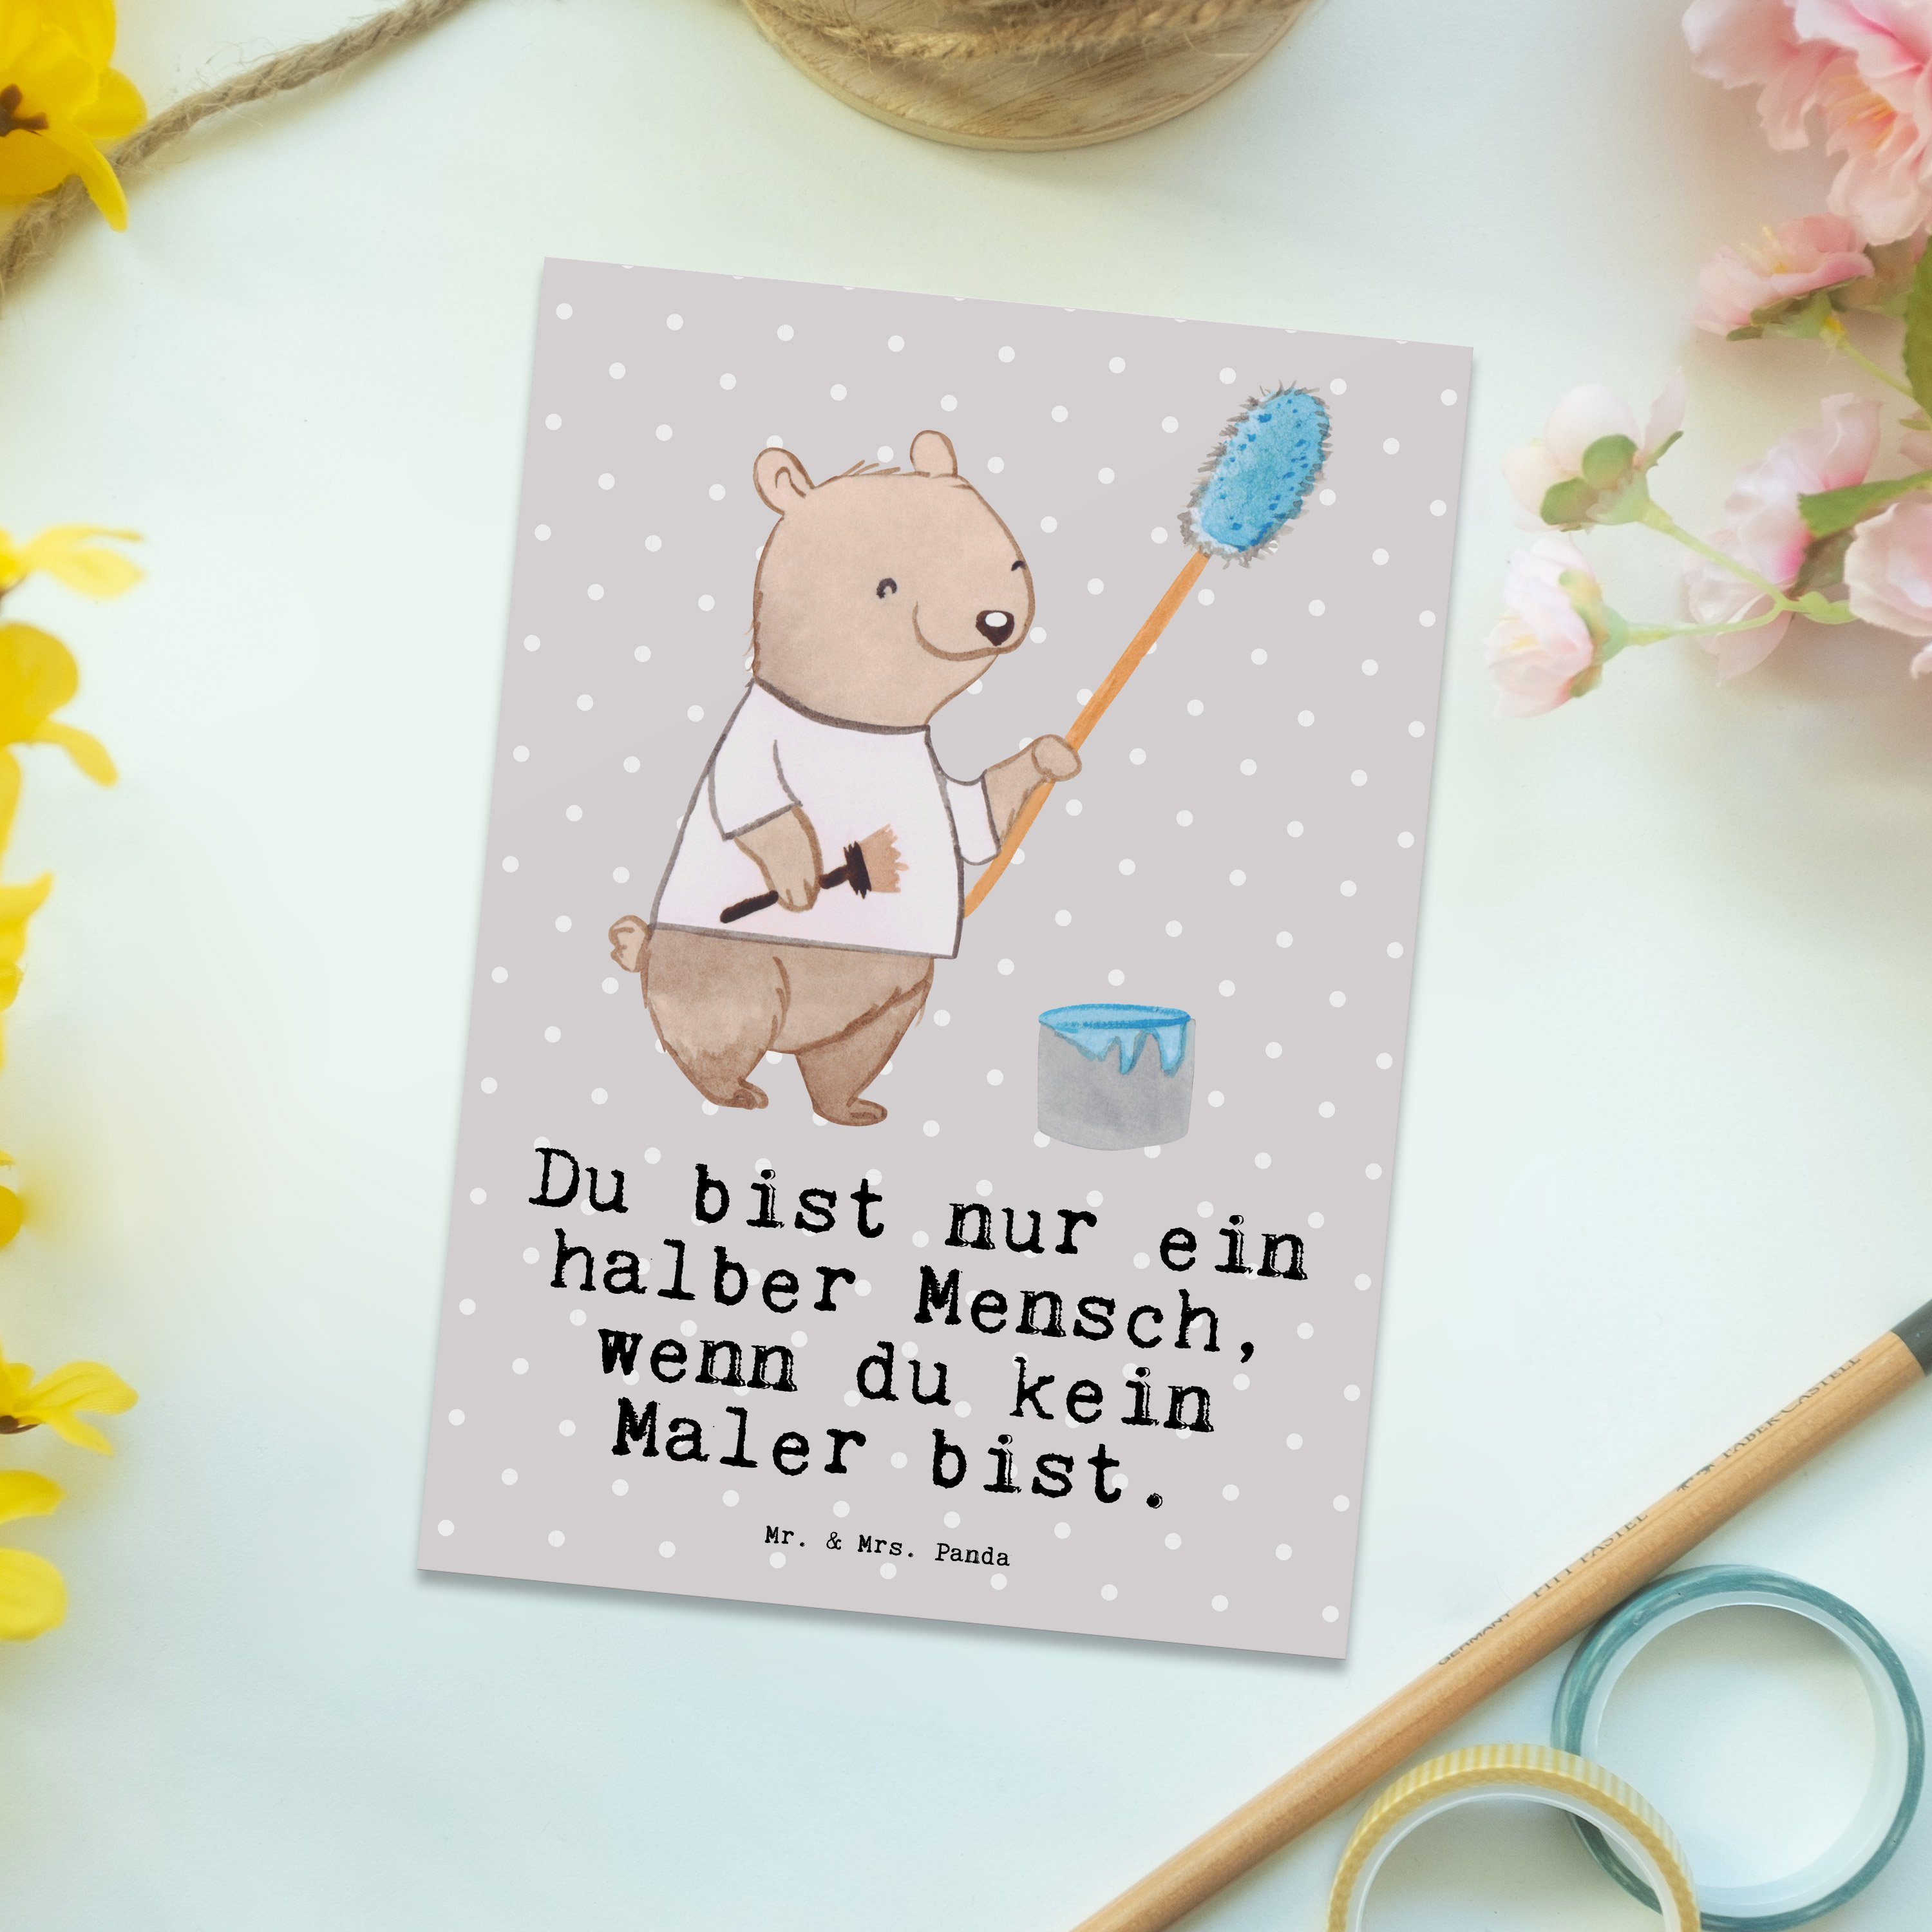 Mr. & Mrs. Panda Postkarte Maler mit Herz - Grau Pastell - Geschenk, Malerbetrieb, Grußkarte, Ge